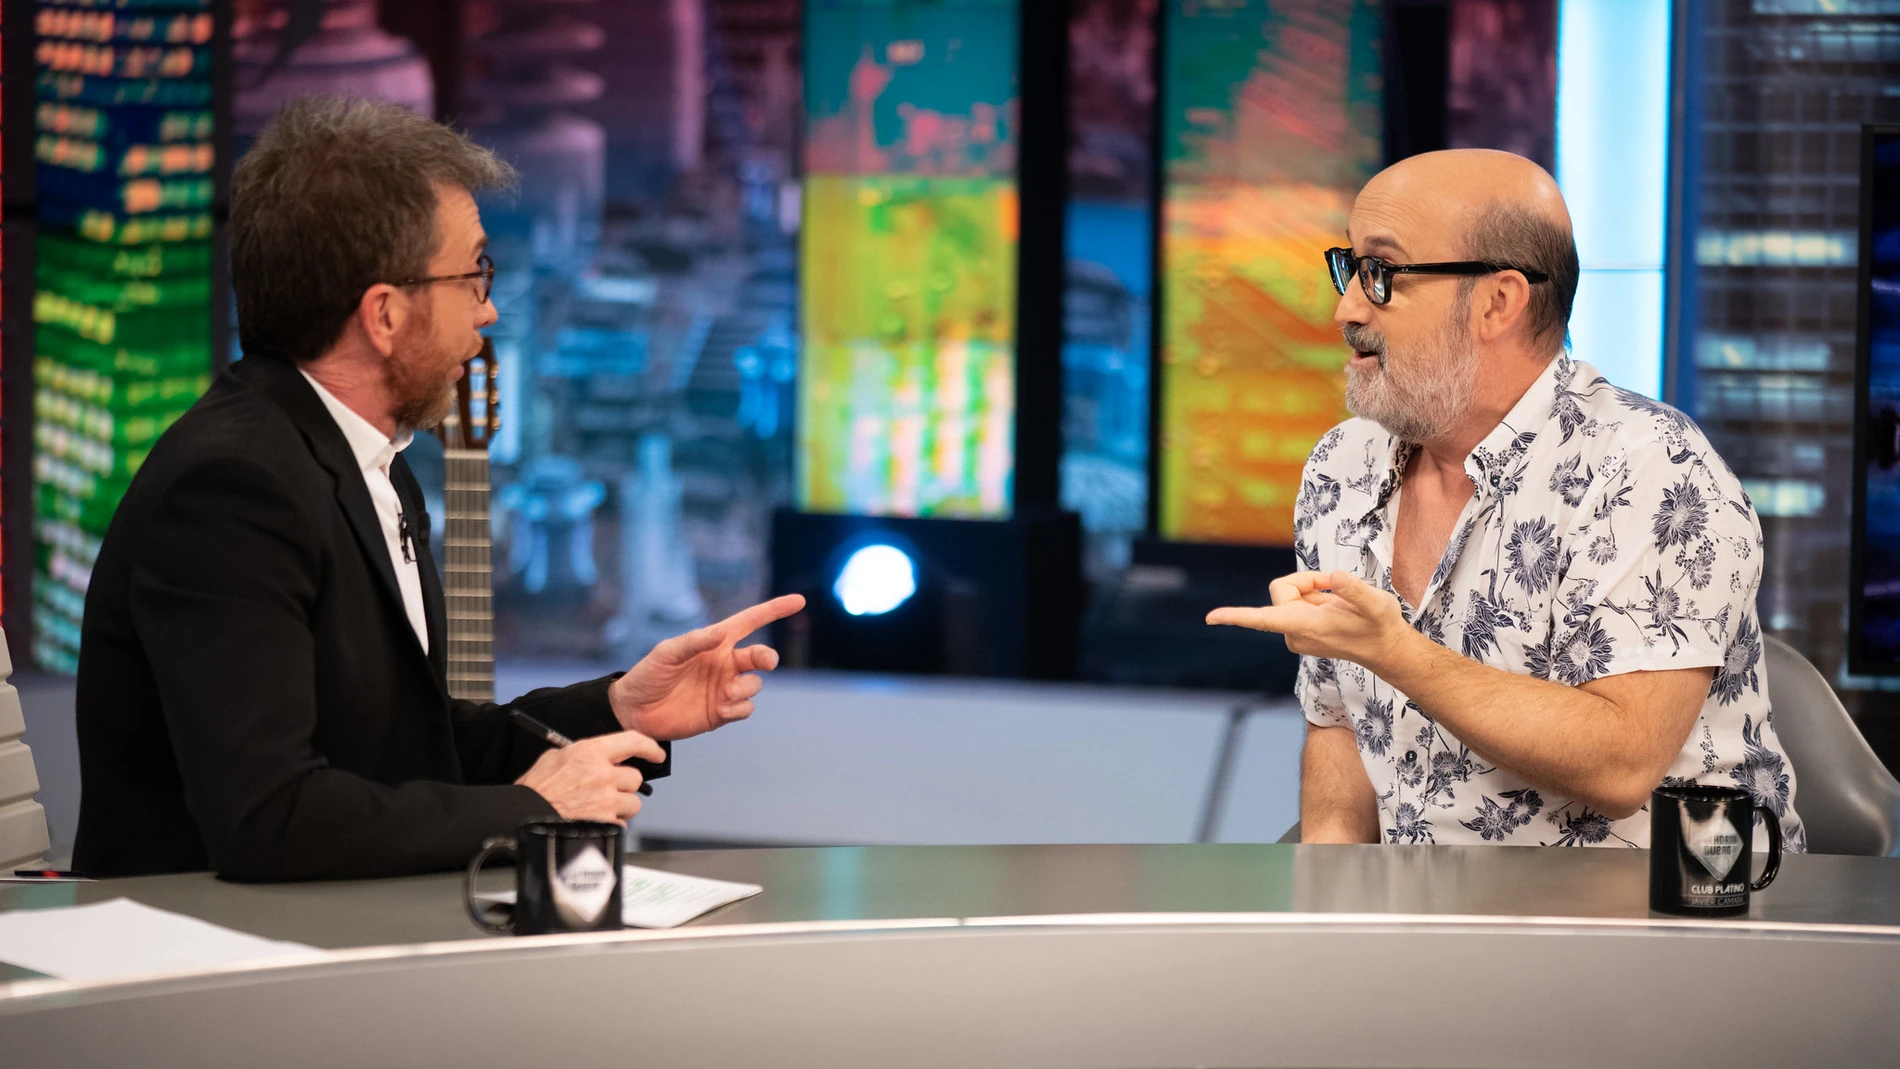 El consejo de Pedro Almodóvar a Javier Cámara tras 'Hable con ella': "Tienes que estudiar inglés"